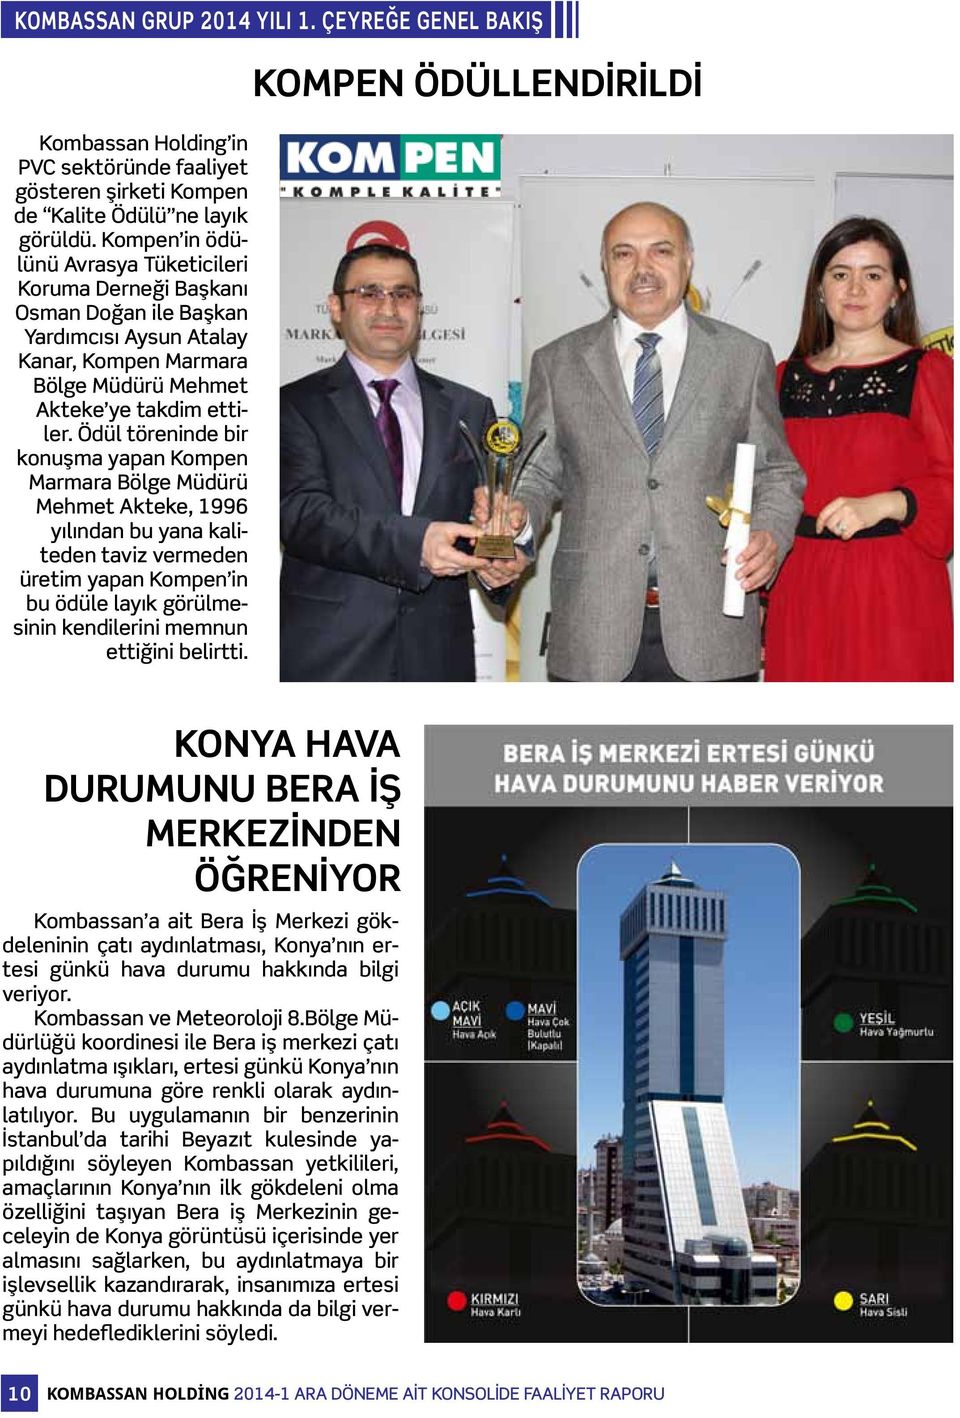 Ödül töreninde bir konuşma yapan Kompen Marmara Bölge Müdürü Mehmet Akteke, 1996 yılından bu yana kaliteden taviz vermeden üretim yapan Kompen in bu ödüle layık görülmesinin kendilerini memnun